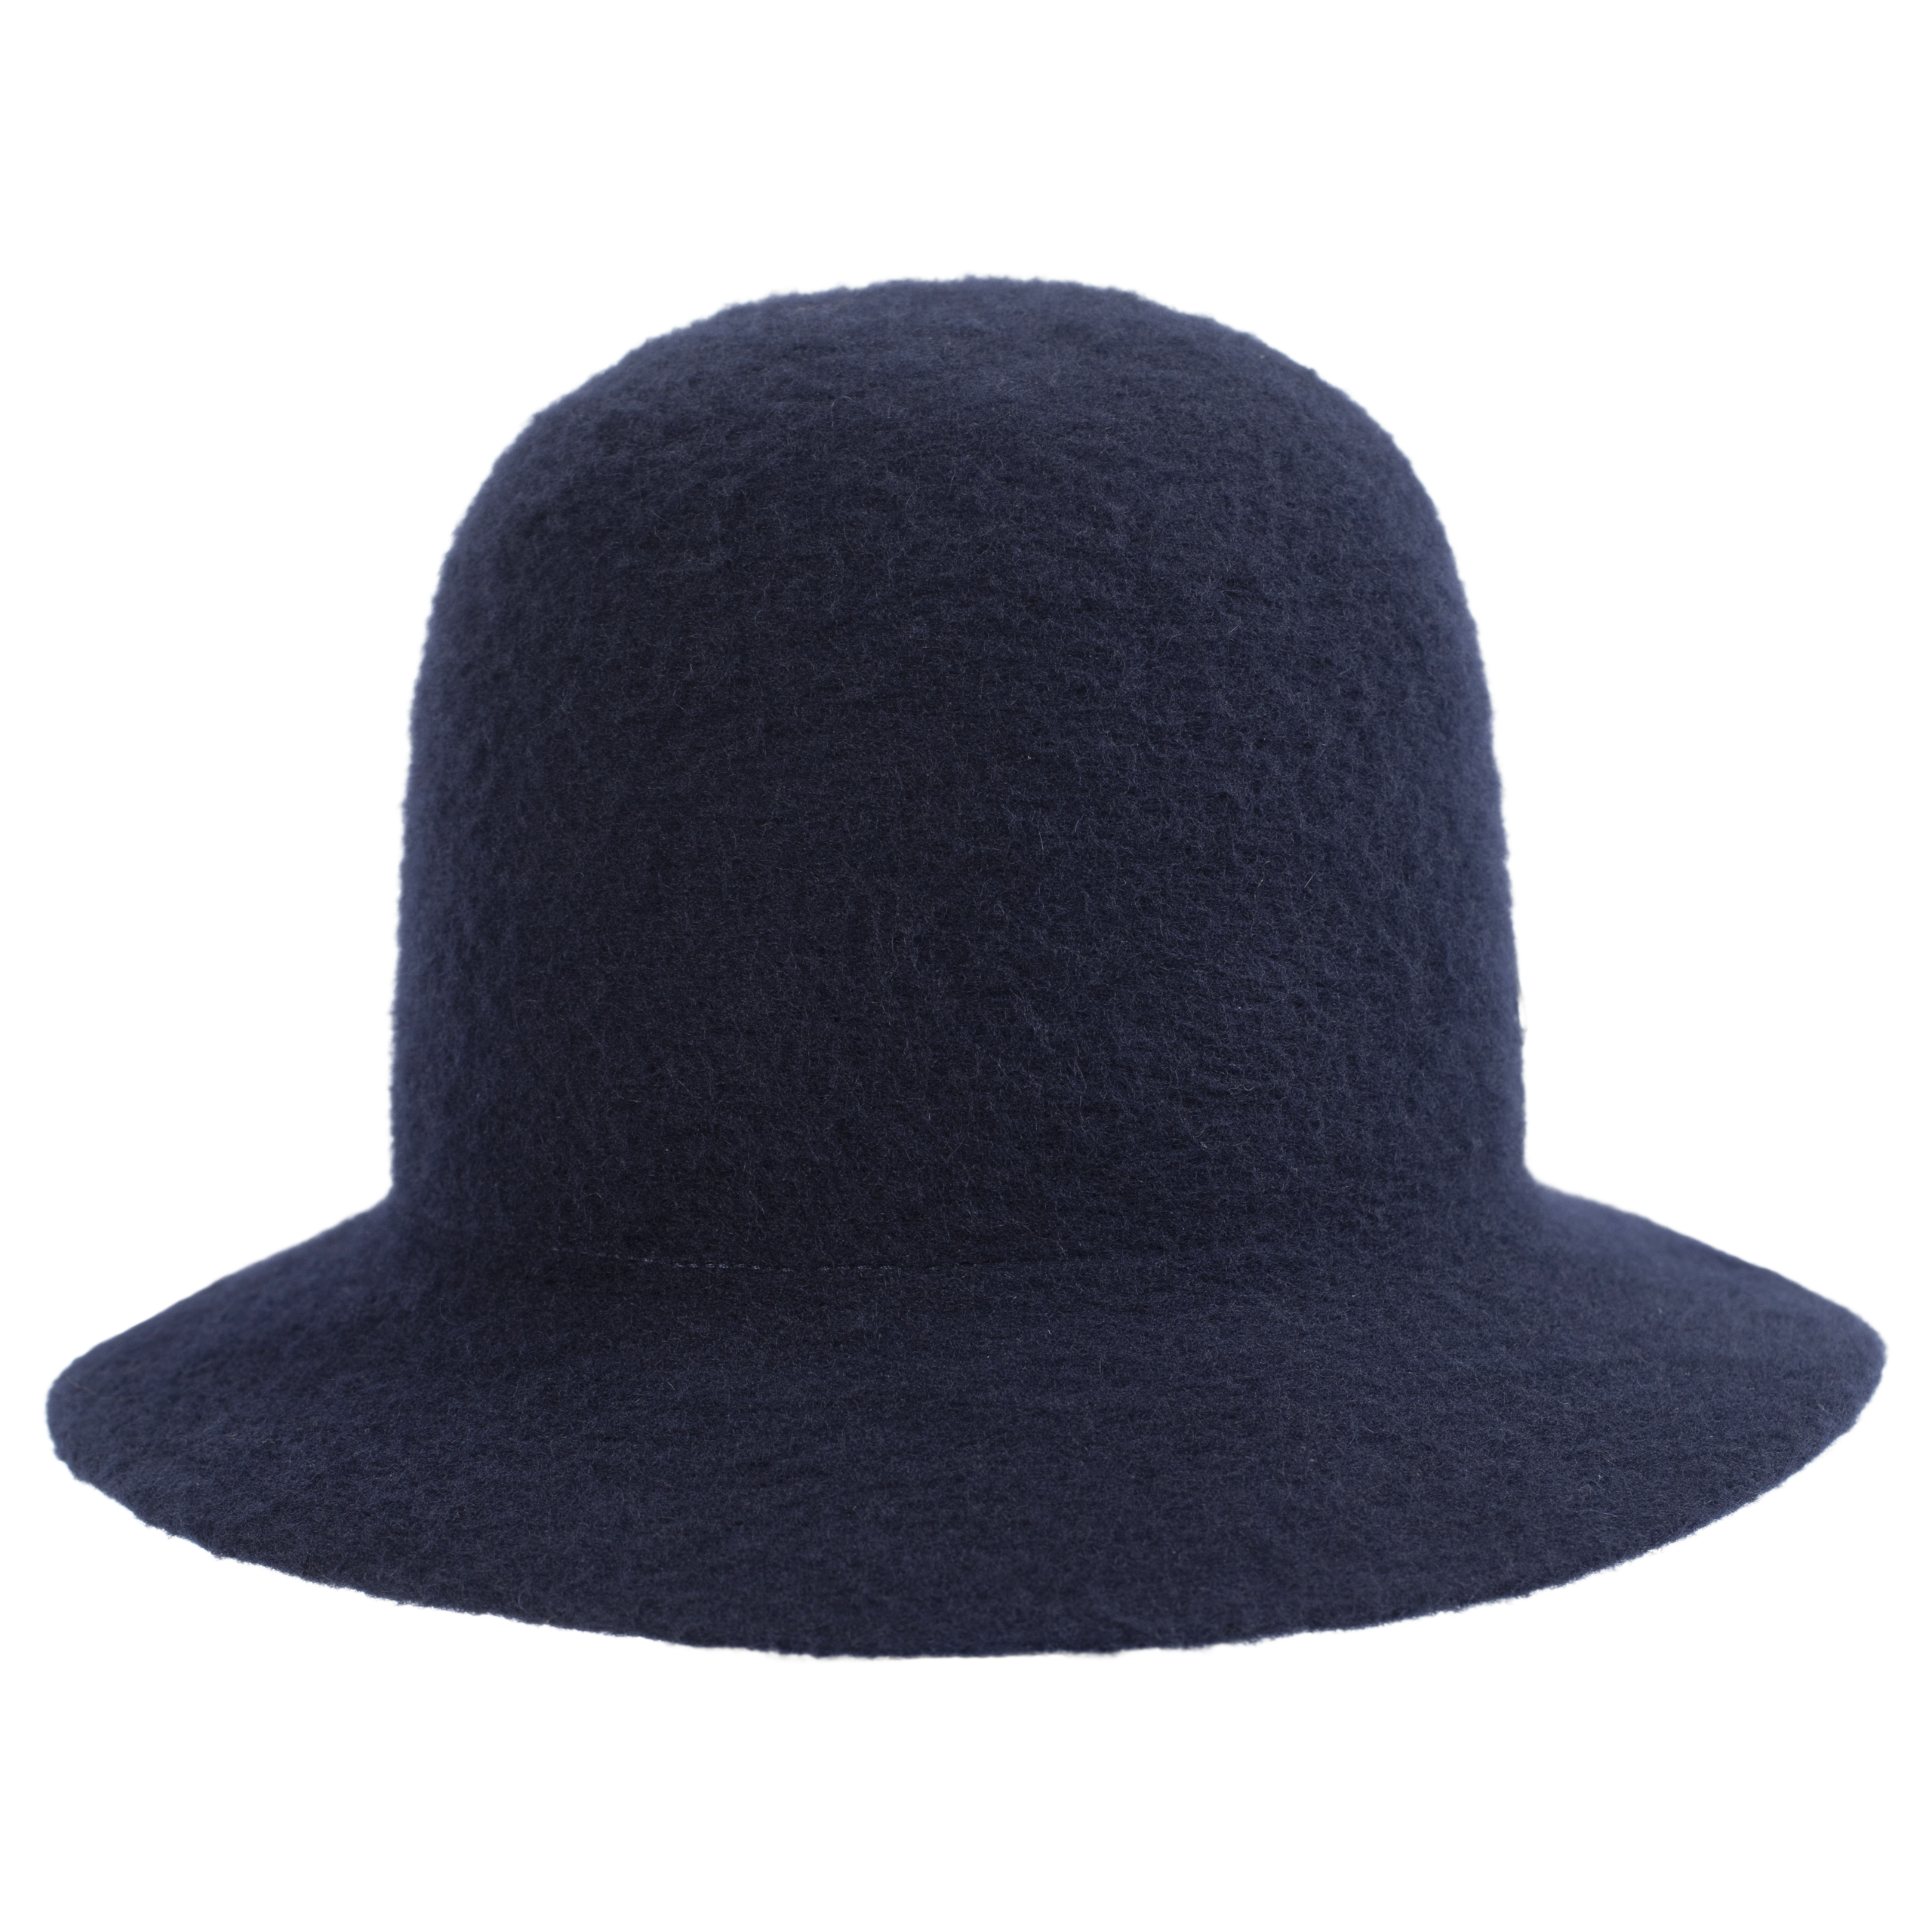 Шерстяная шляпа с вышитым логотипом Junya Watanabe WH-K606-051-2, размер 3 - фото 2